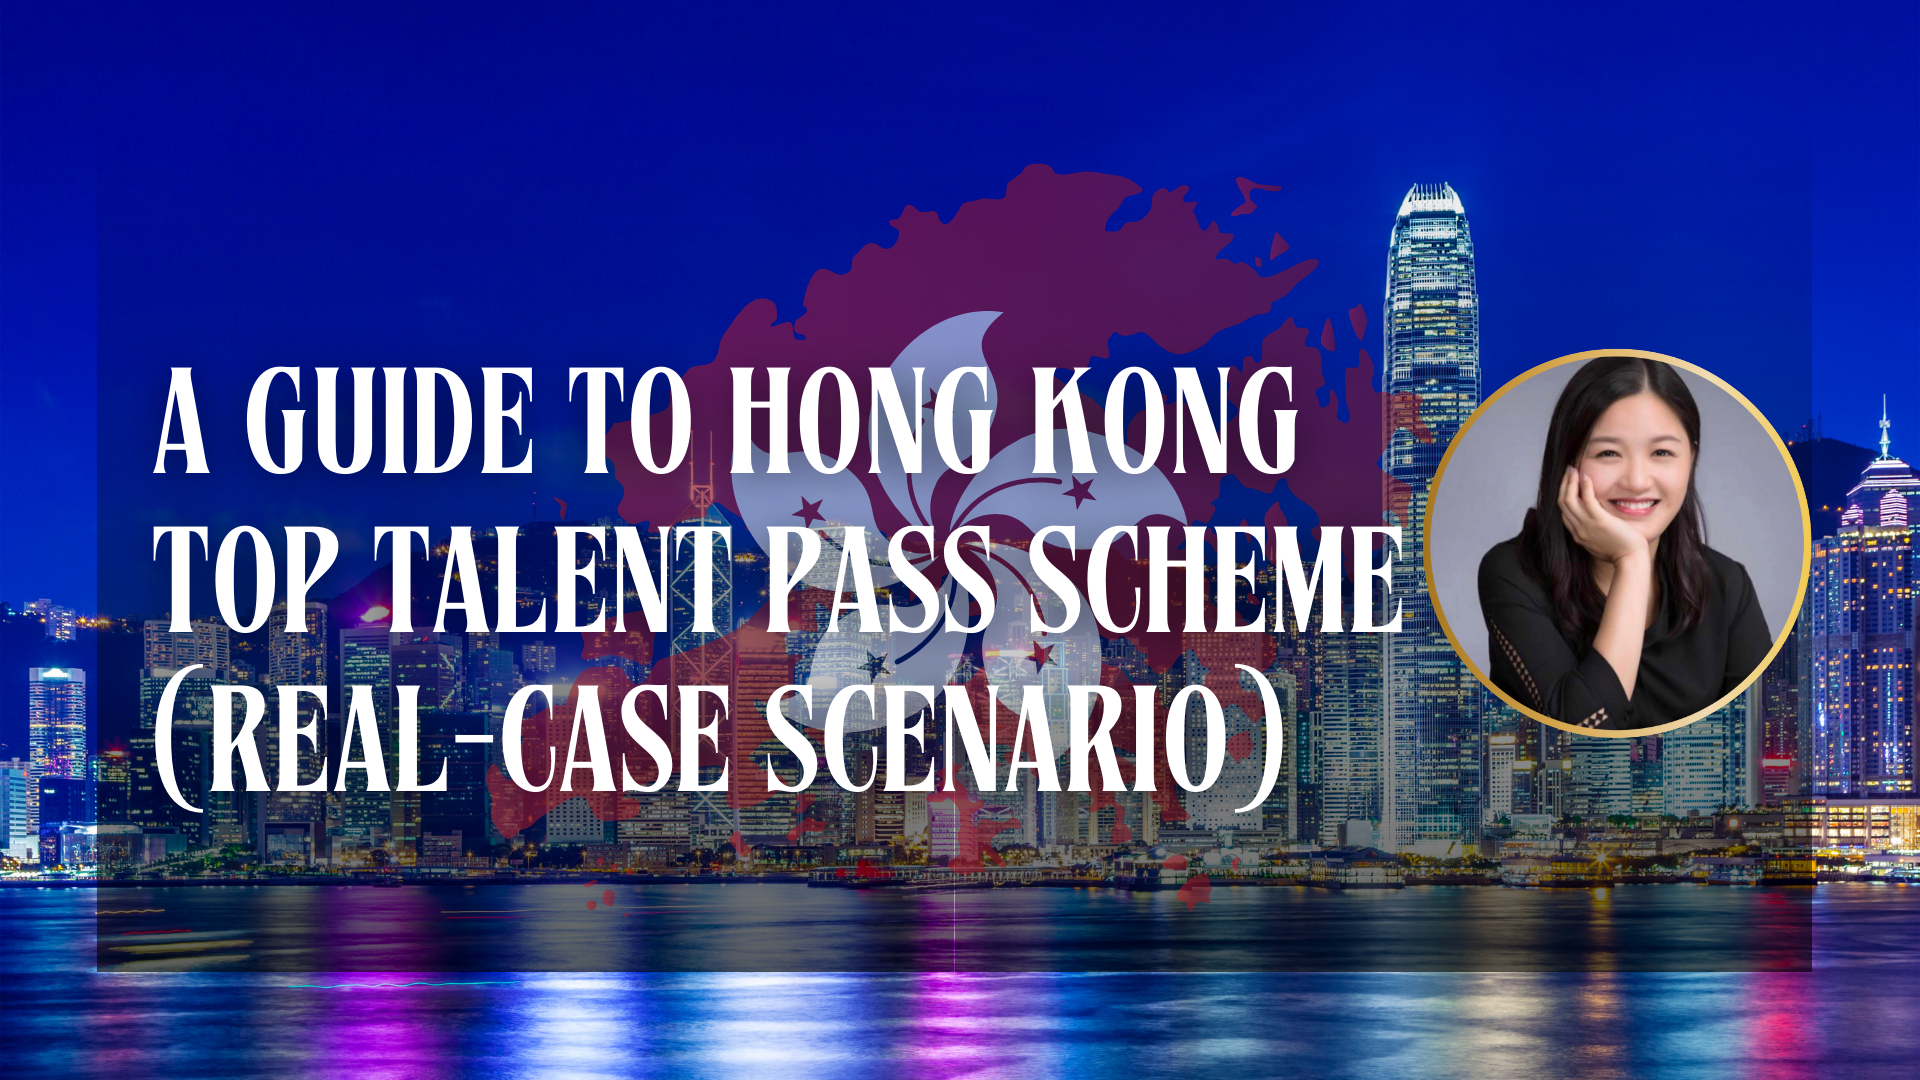 A Guide to Hong Kong Top Talent Pass Scheme (Real-case Scenario)